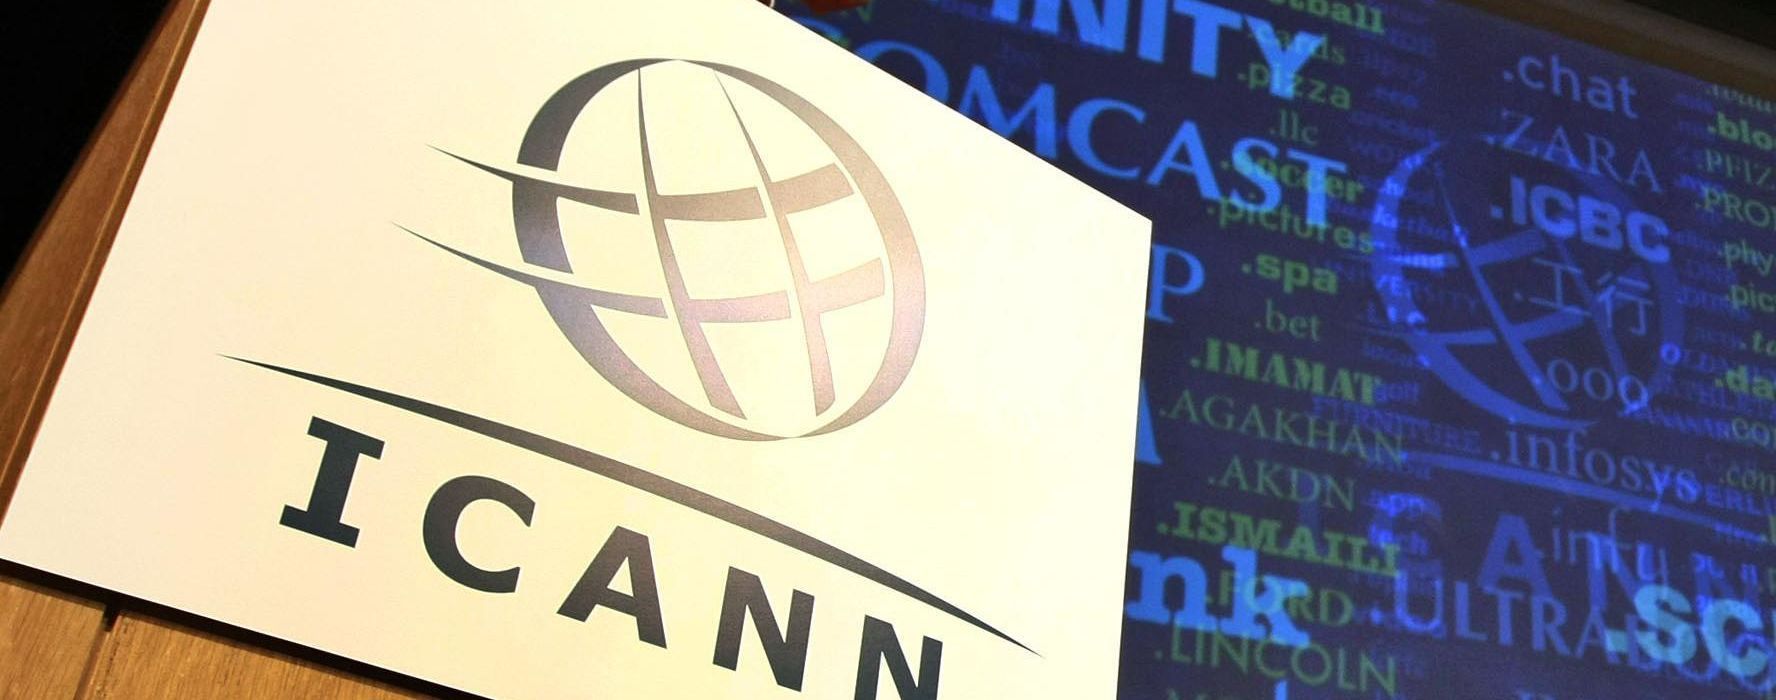 ICANN-аккредитация: кому это нужно и почему это важно для хостинг-провайдера?